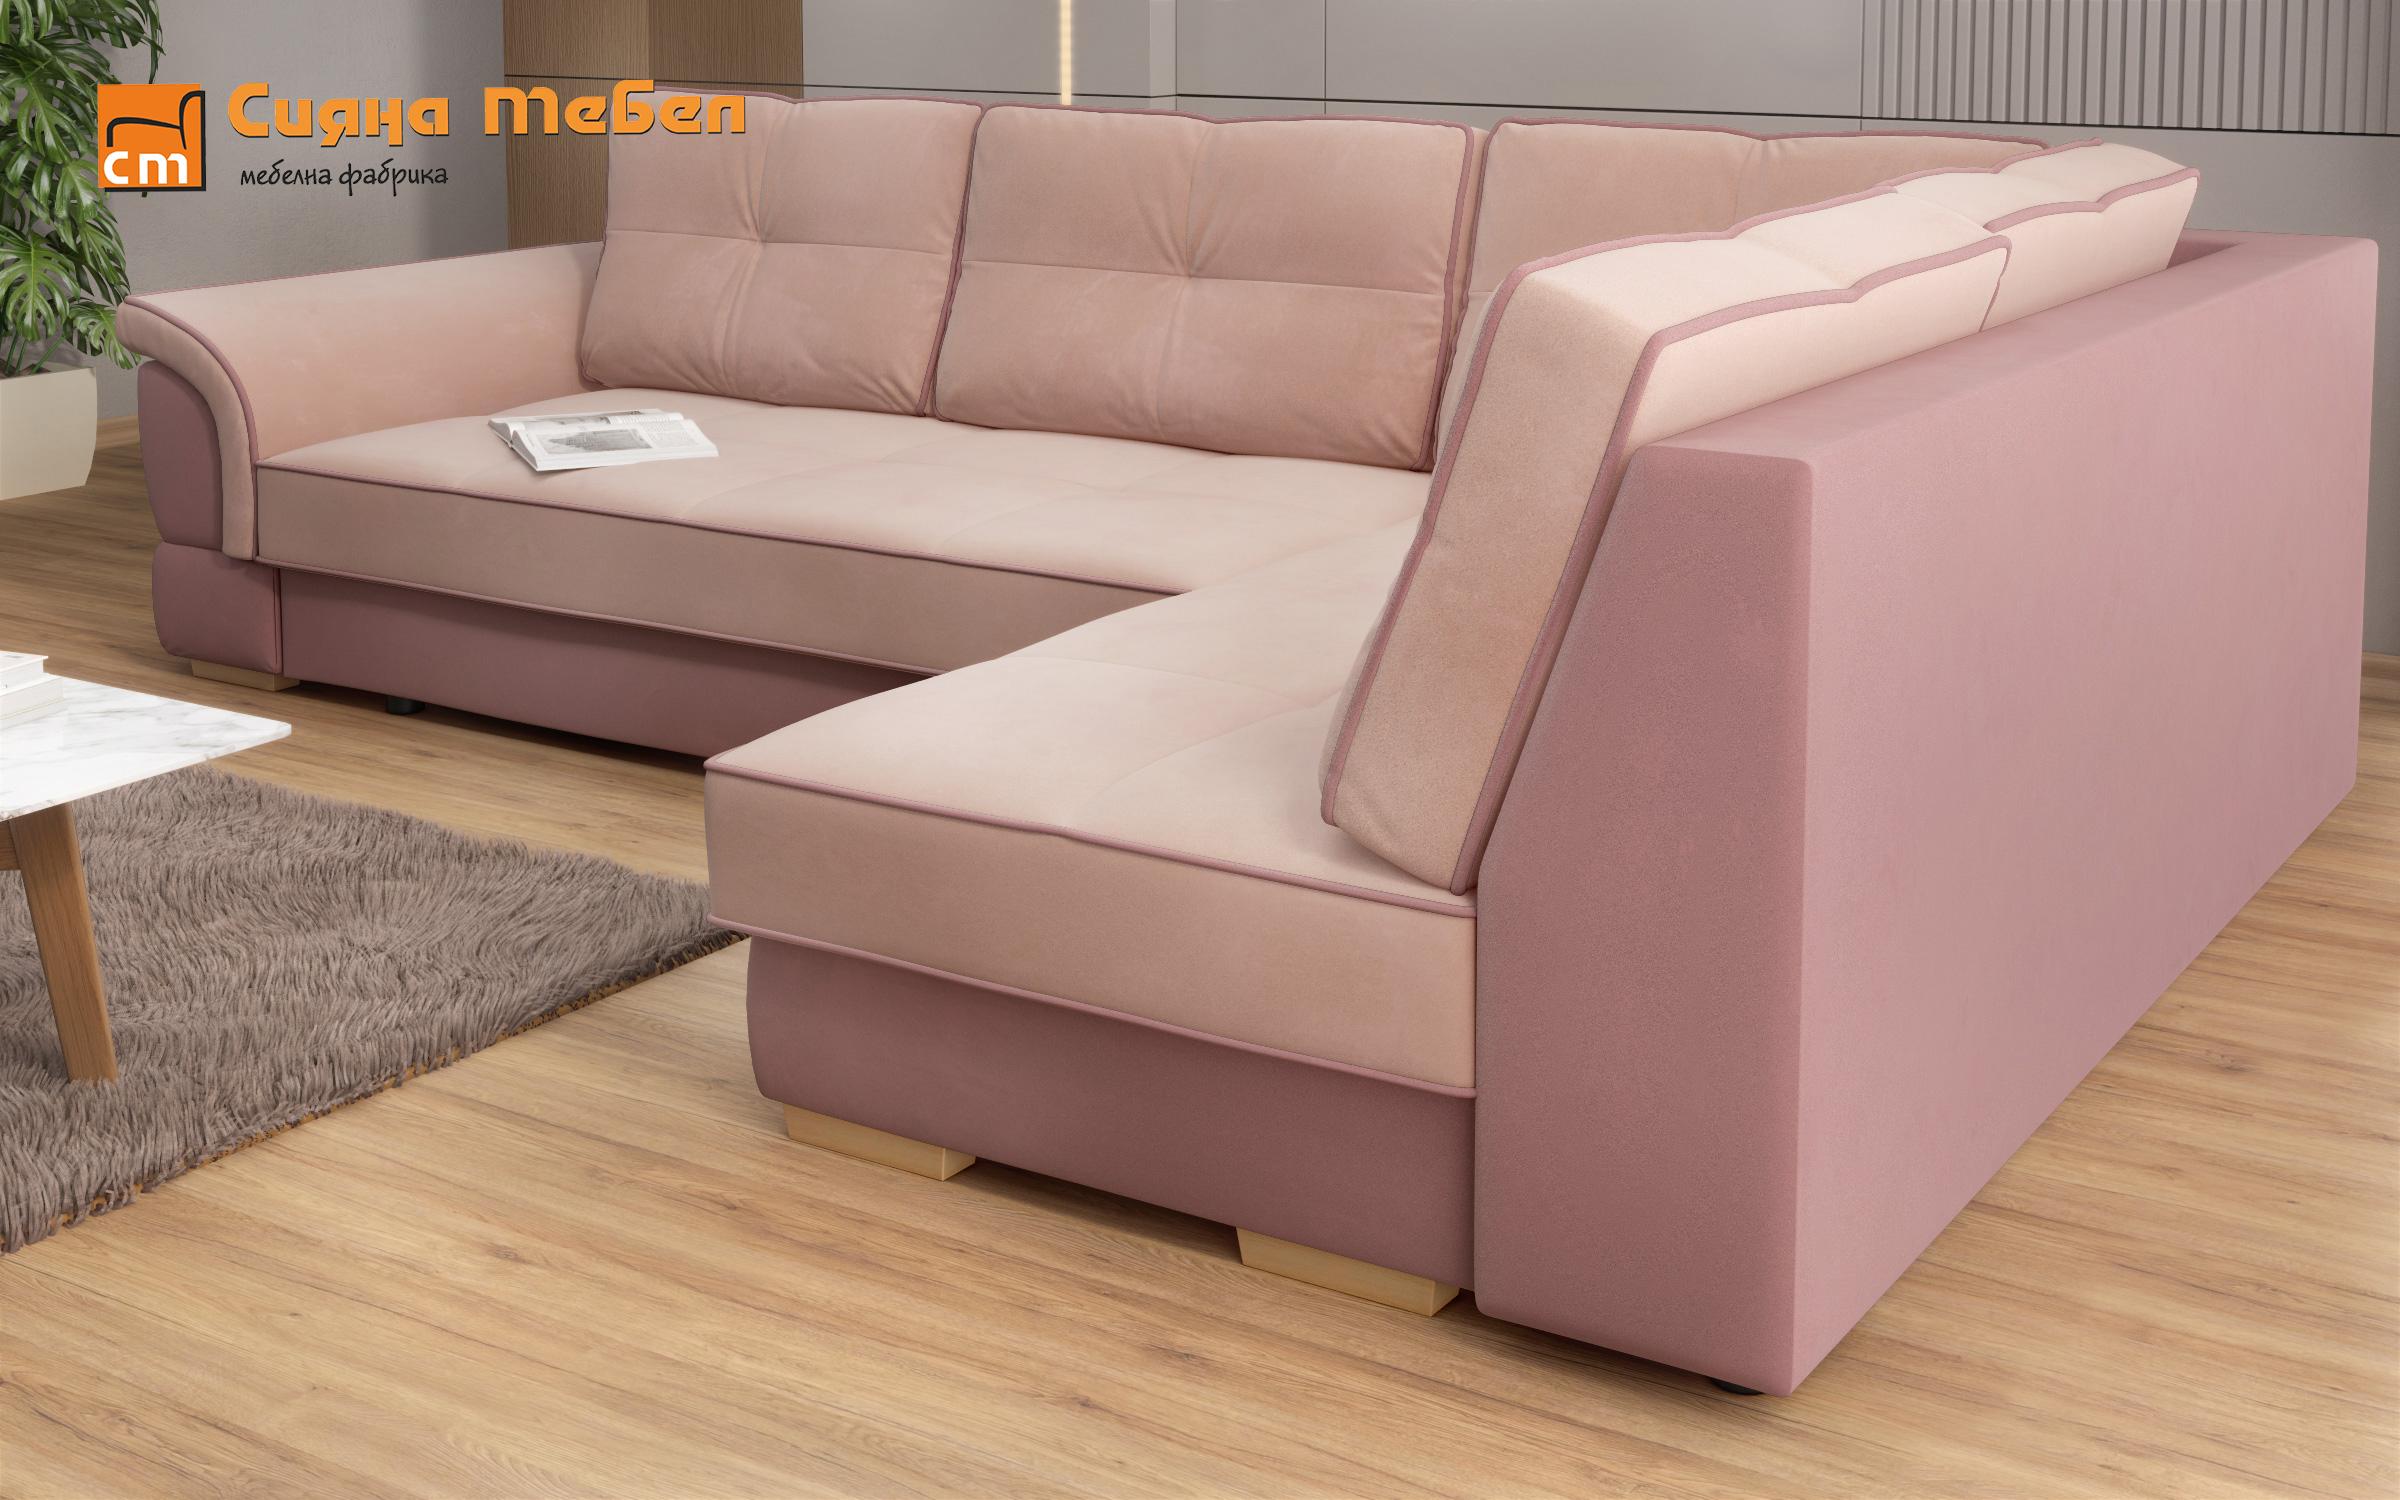 Γωνιακός καναπές Next, ροζ + ανοιχτό ροζ  8